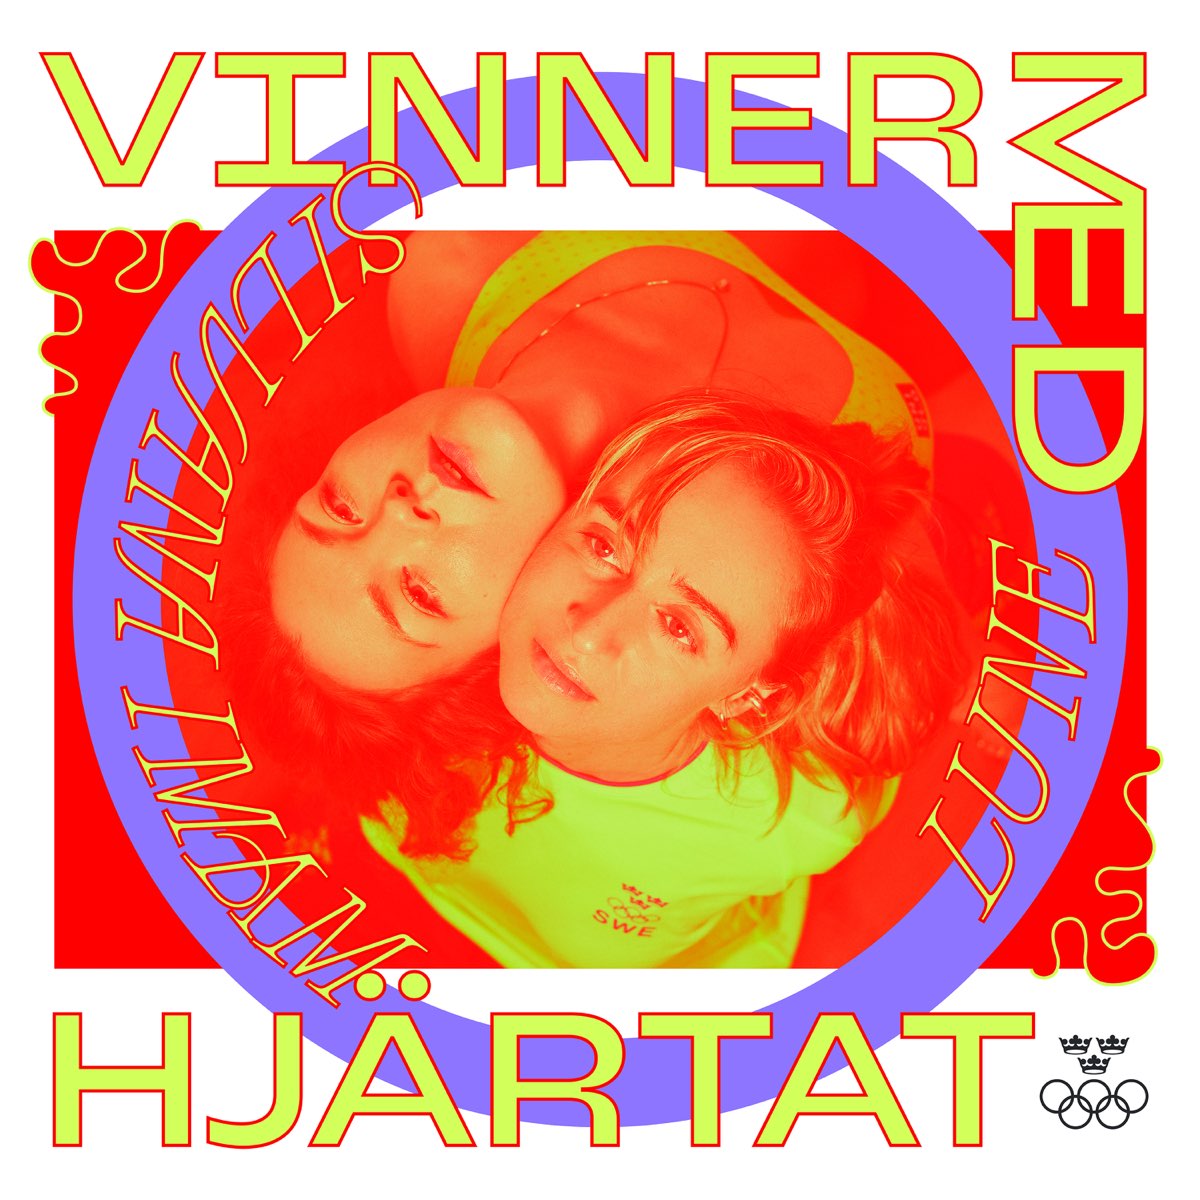 Lune & Silvana Imam Vinner med hjärtat cover artwork